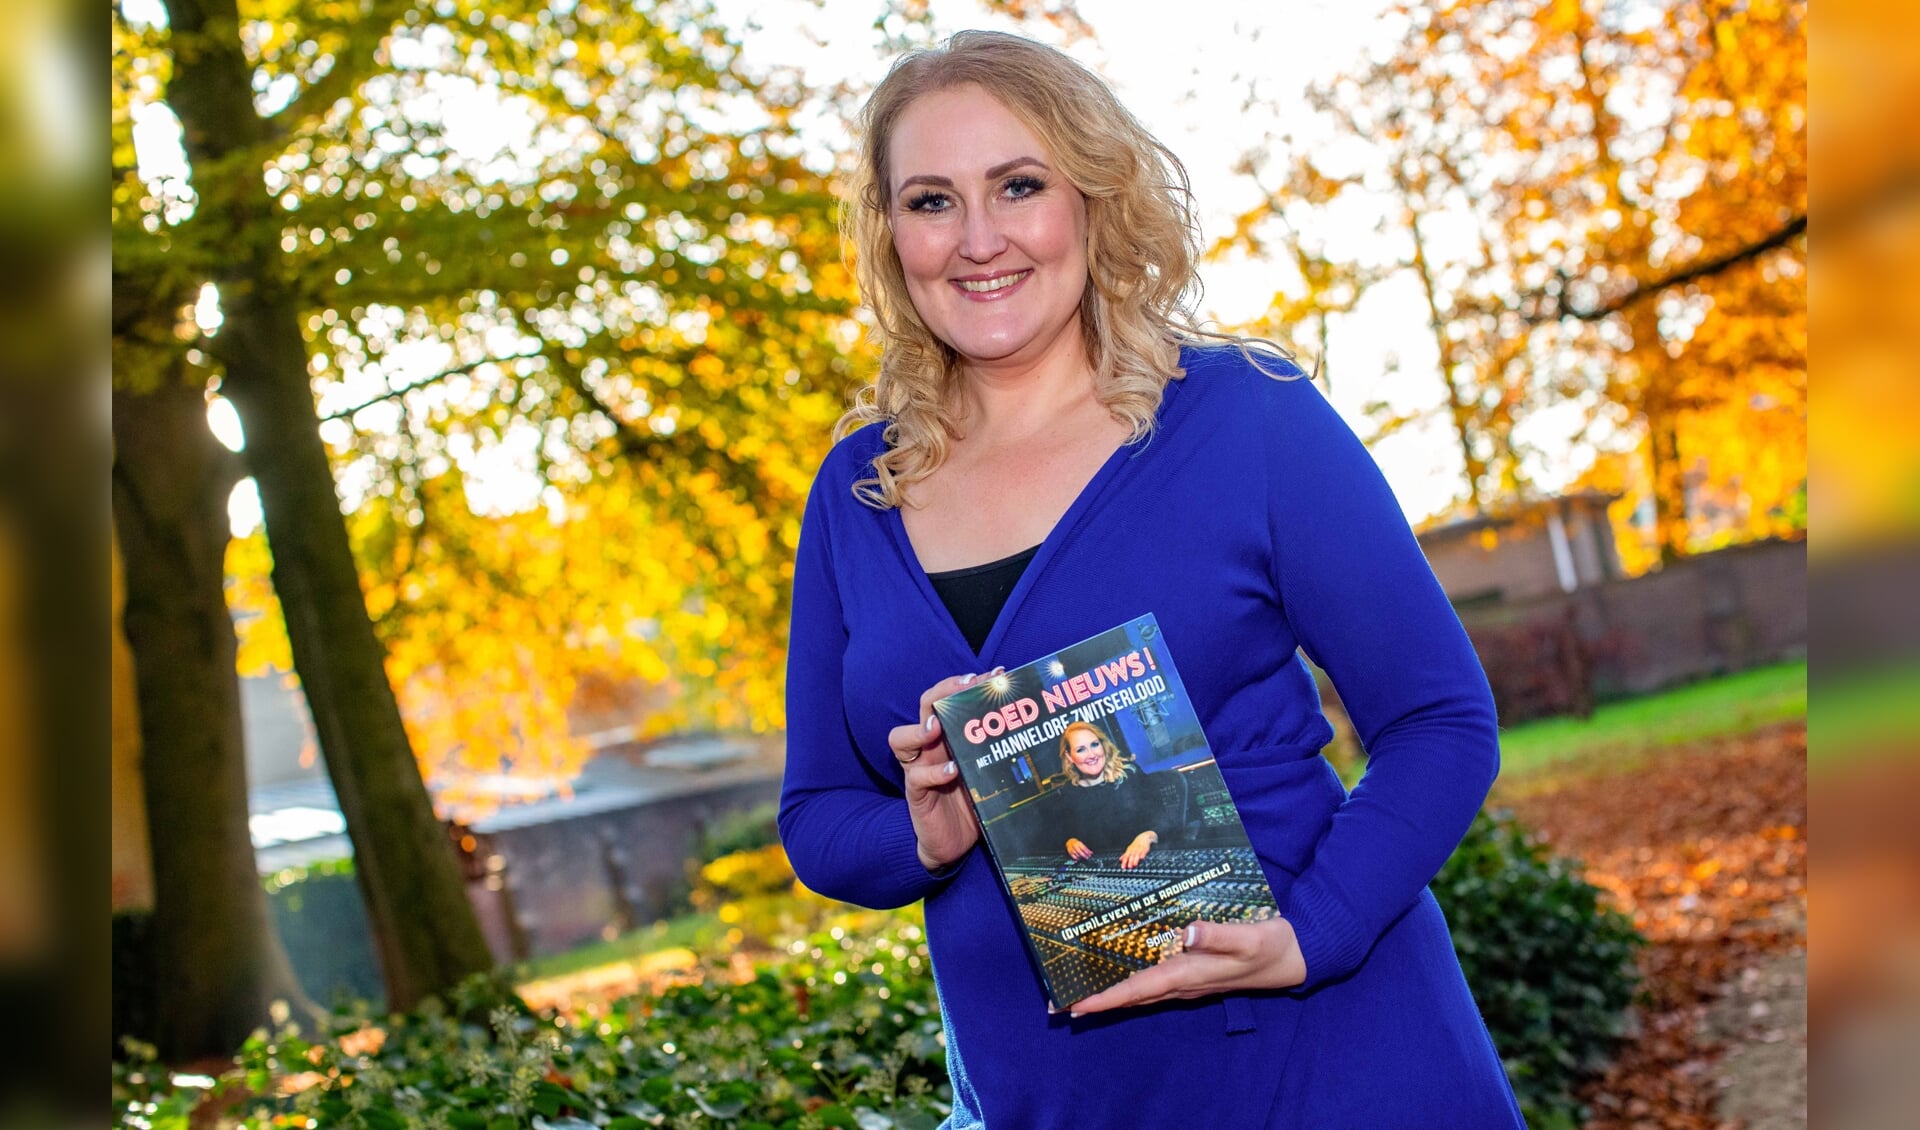 Nieuwslezeres, voice-over en nu ook schrijfster Hannelore Zwitserlood met haar boek dat werd gepresenteerd in boekhandel Voorhoeve.